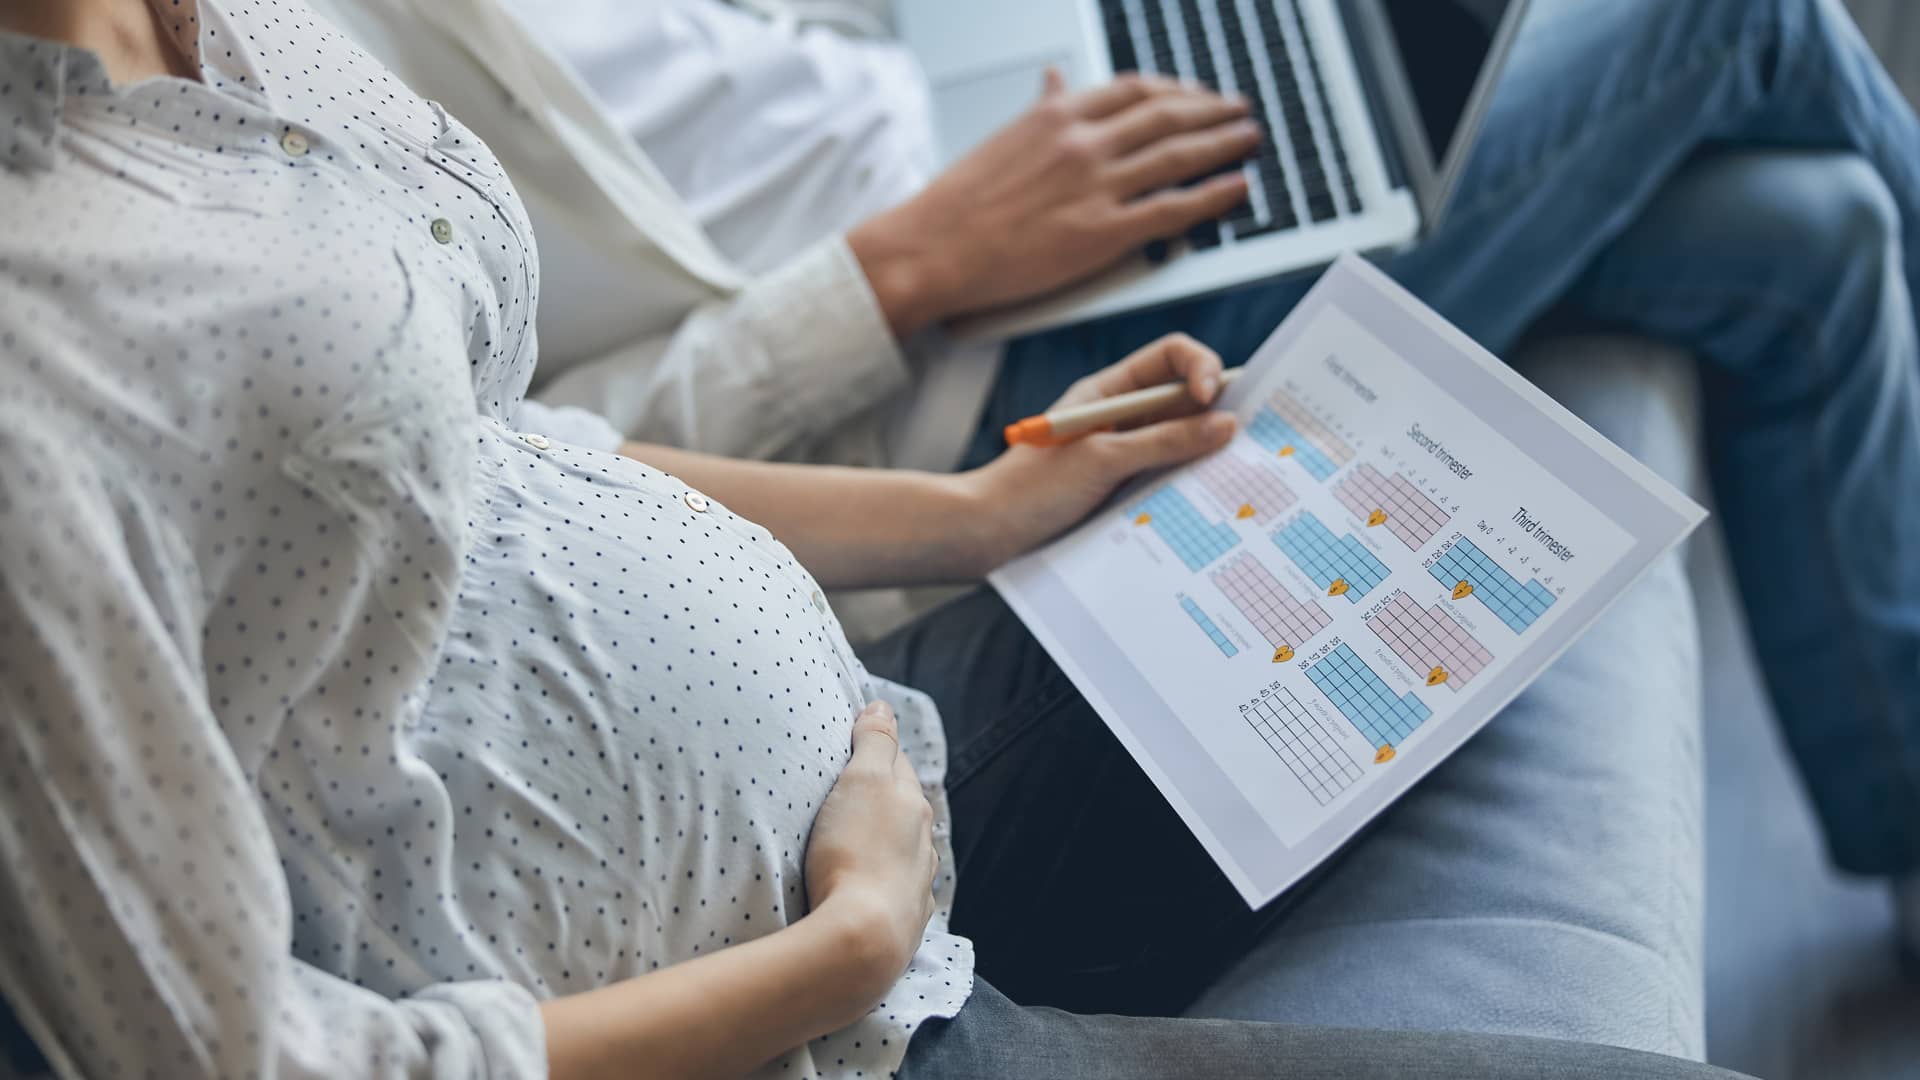 Calcula tus semanas de embarazo y fecha probable de parto